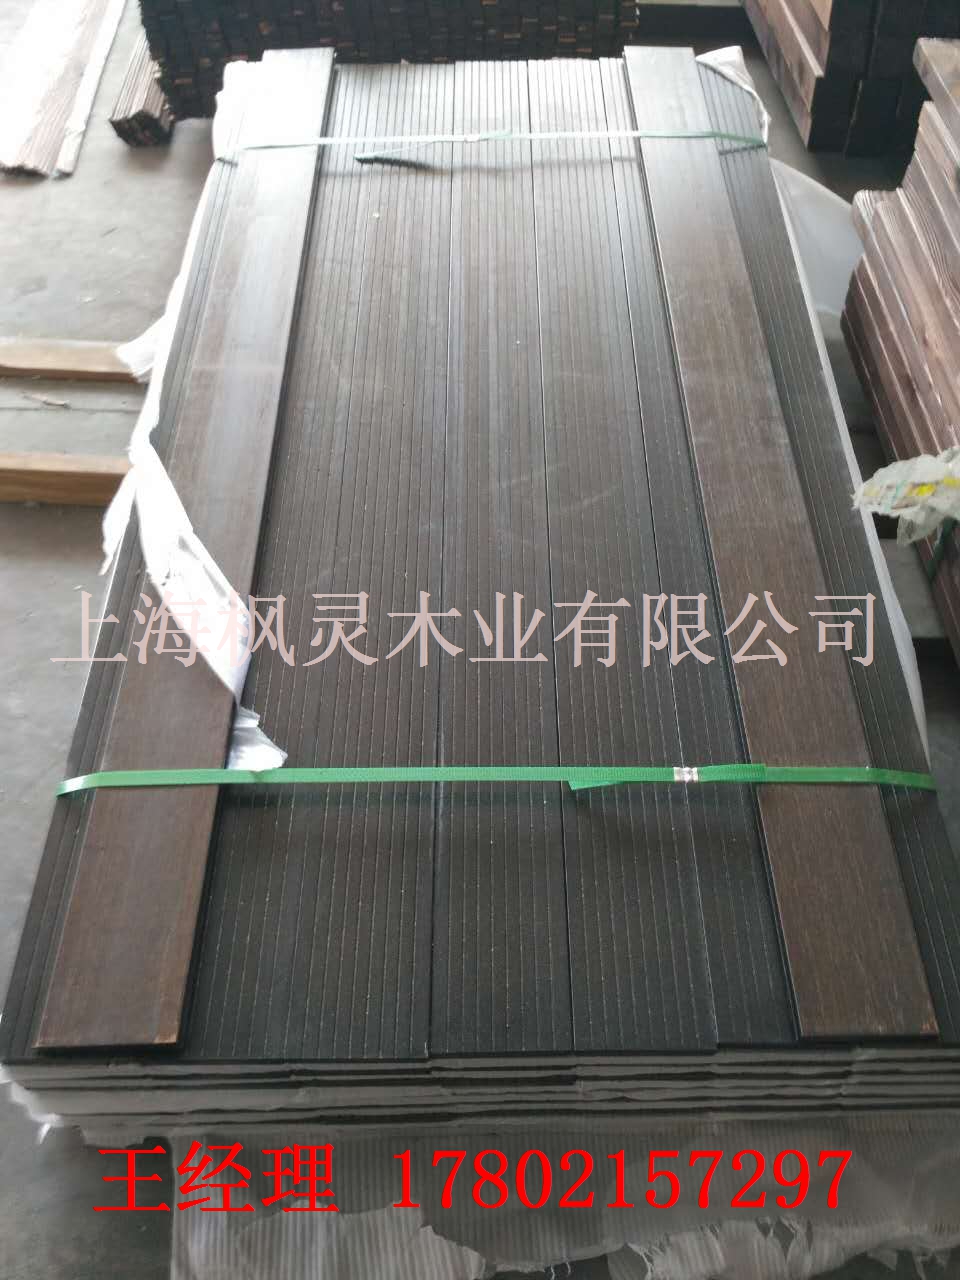 上海枫灵木业有限公司